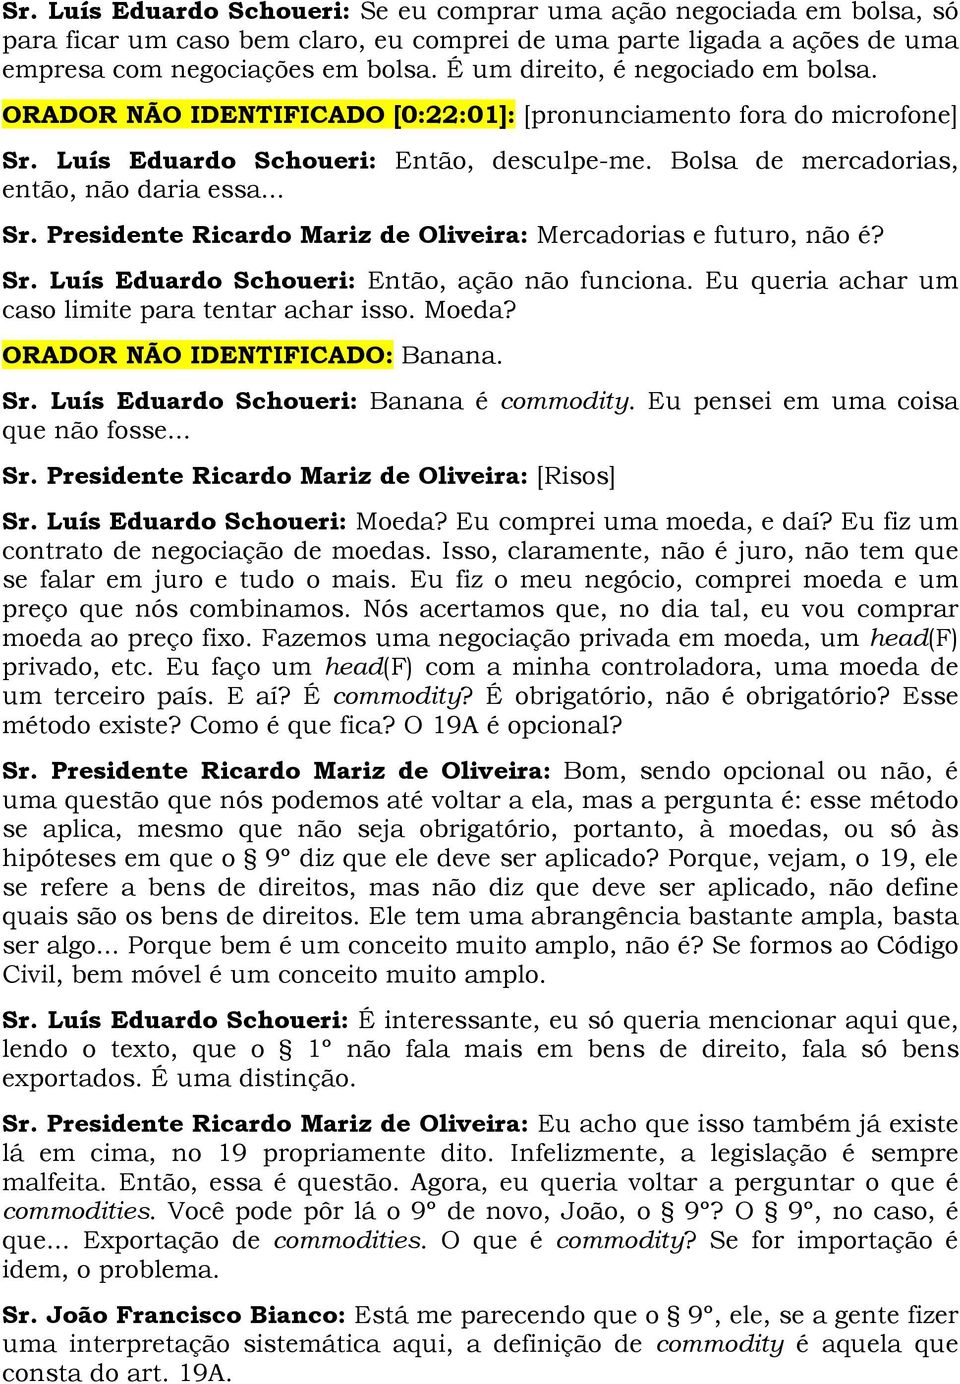 .. Sr. Presidente Ricardo Mariz de Oliveira: Mercadorias e futuro, não é? Sr. Luís Eduardo Schoueri: Então, ação não funciona. Eu queria achar um caso limite para tentar achar isso. Moeda?